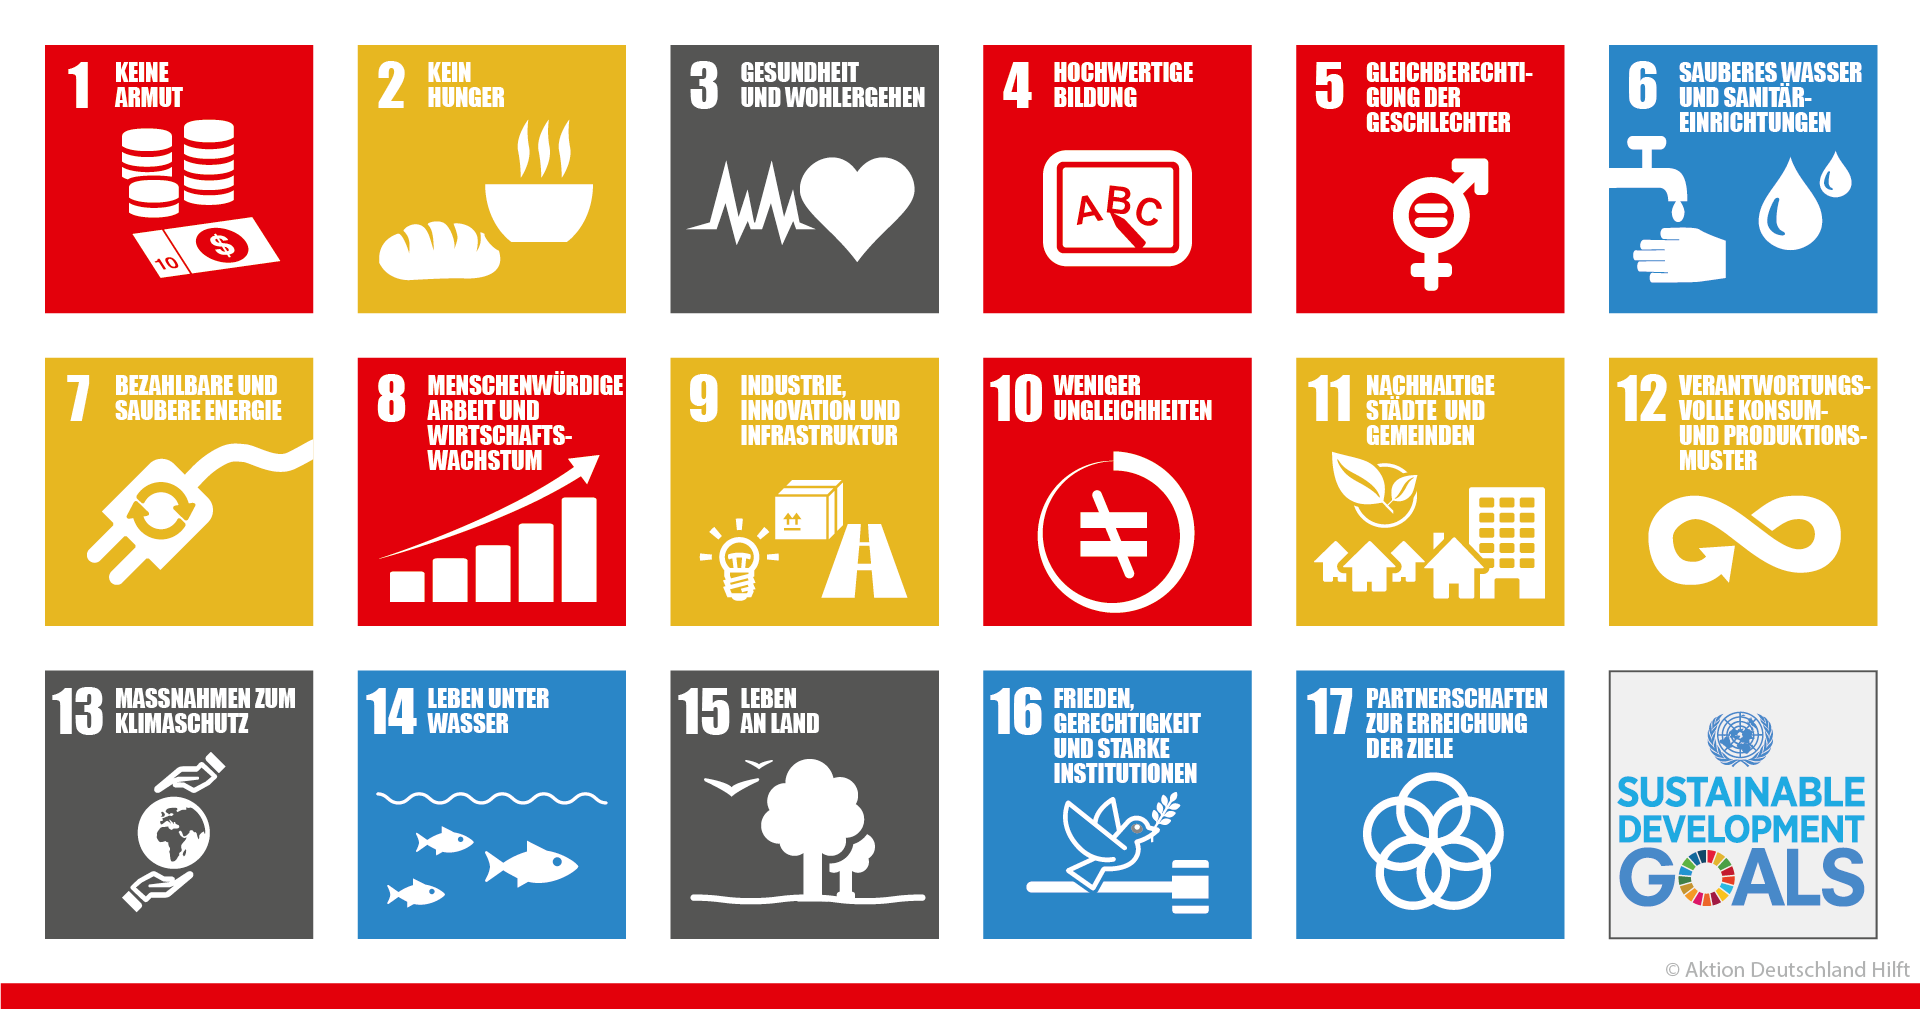 Die Abbildung zeigt die 17 Entwicklungsziele der UN 